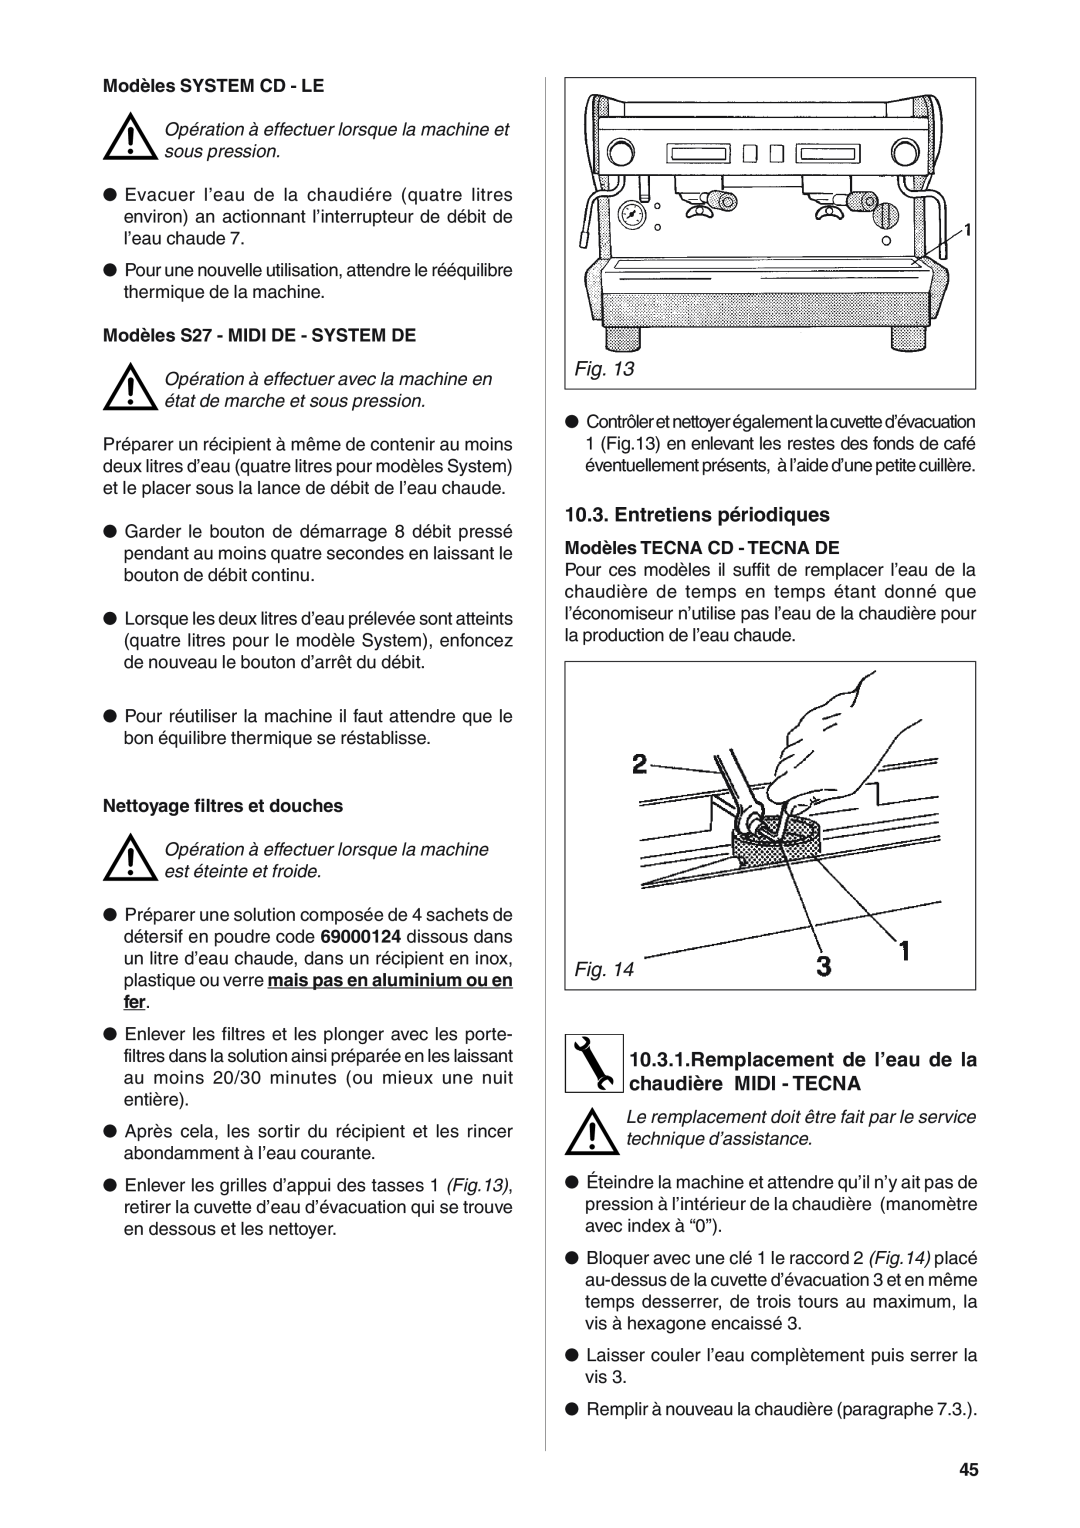 Rancilio S20 manual Entretiens périodiques, Remplacement de l’eau de la chaudière MIDI - TECNA, Modèles SYSTEM CD - LE 